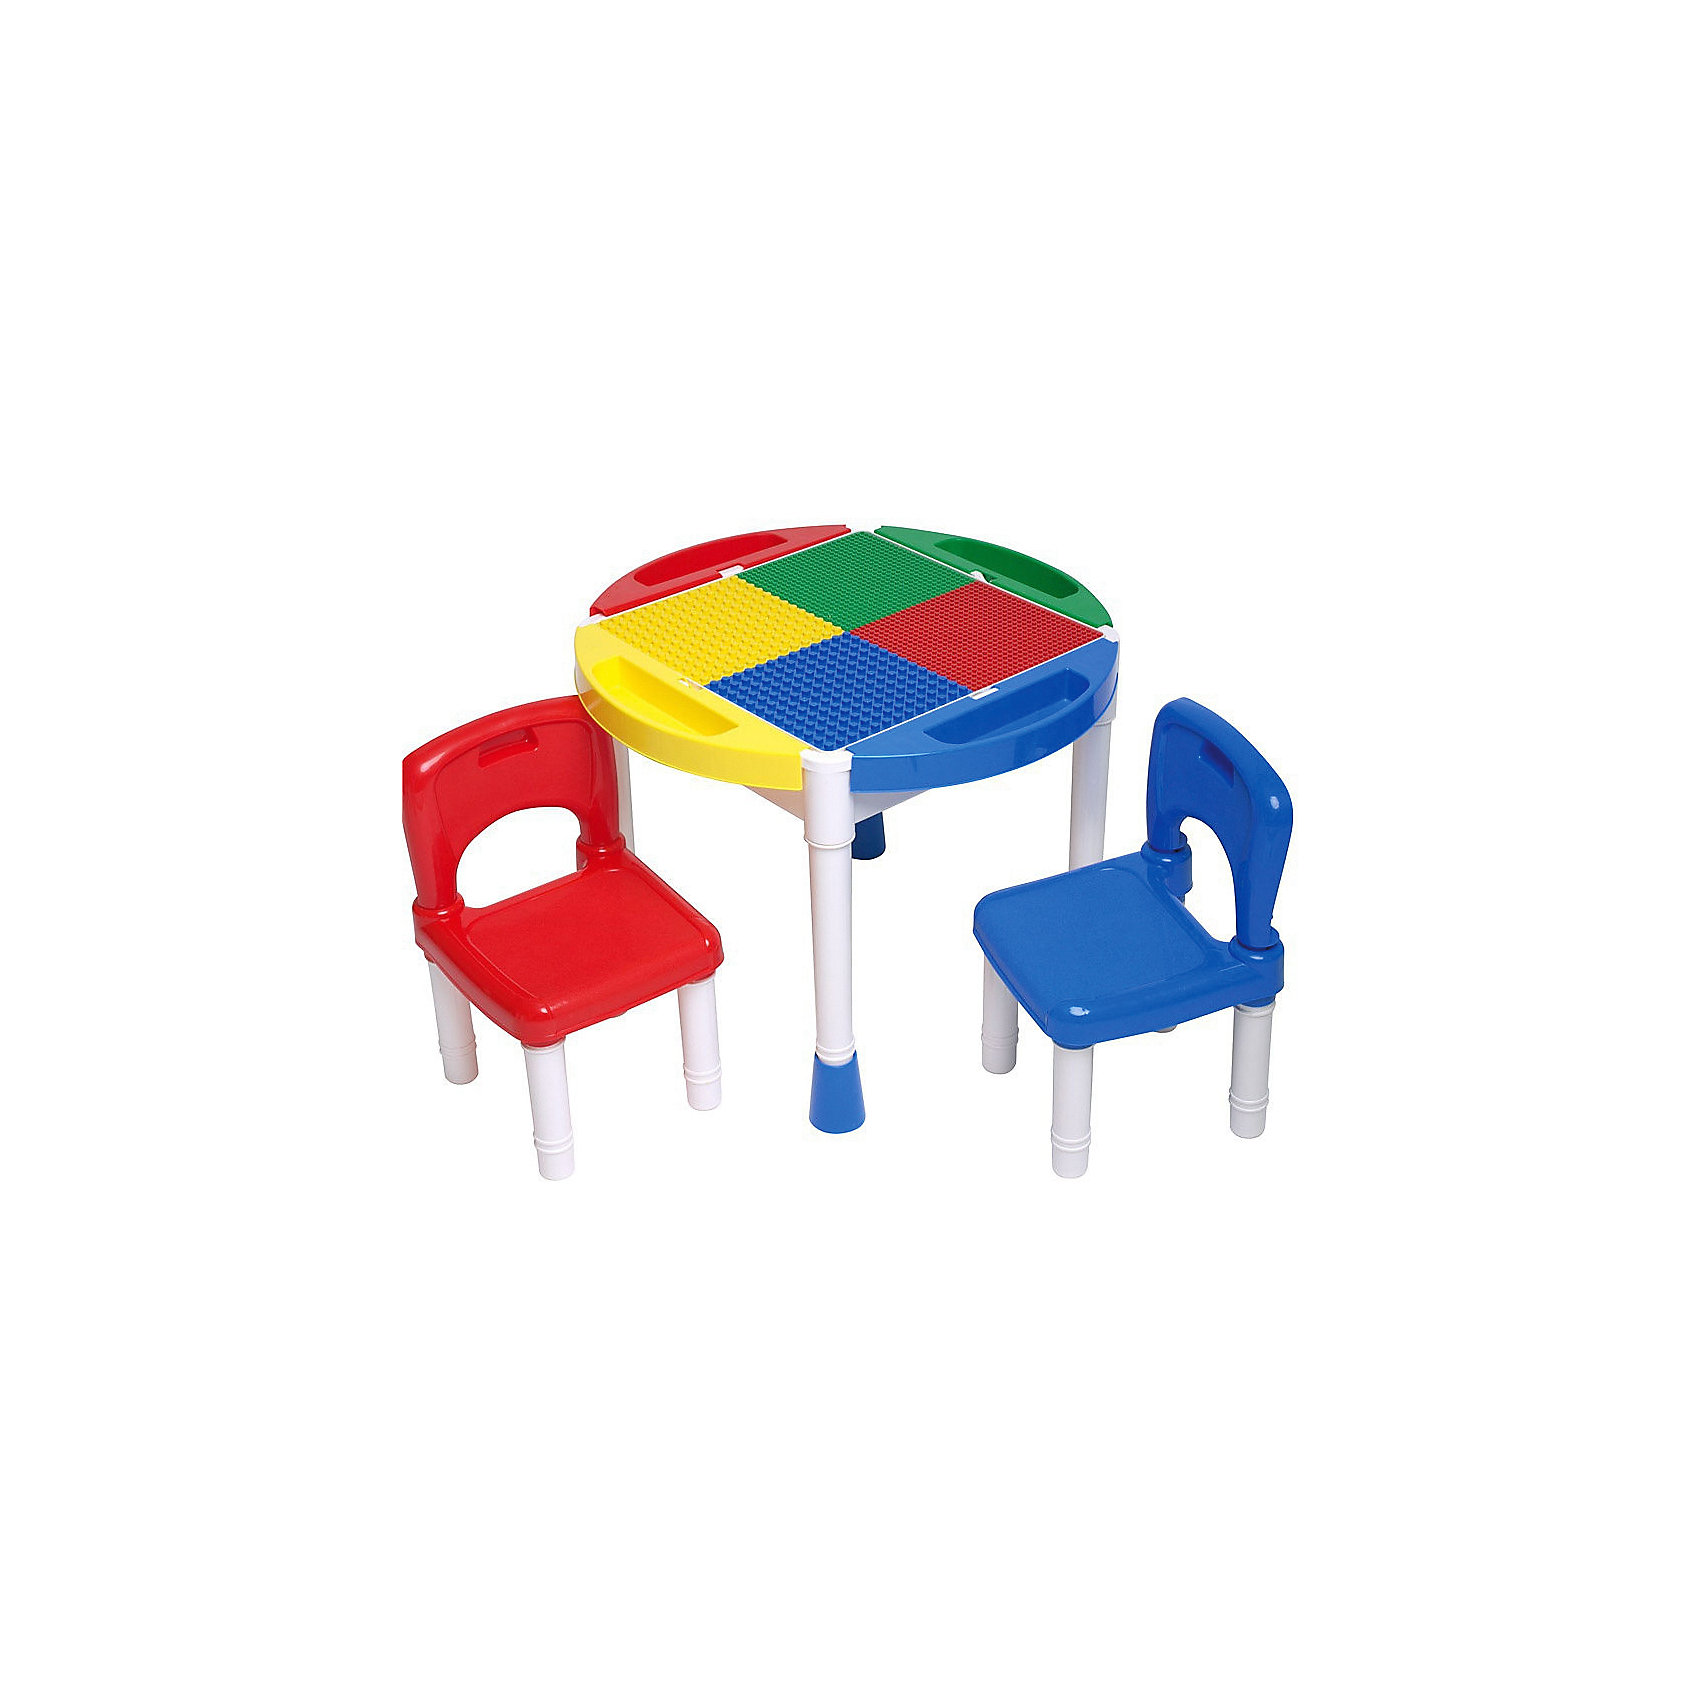 стол для конструирования база игрушек 4 в 1